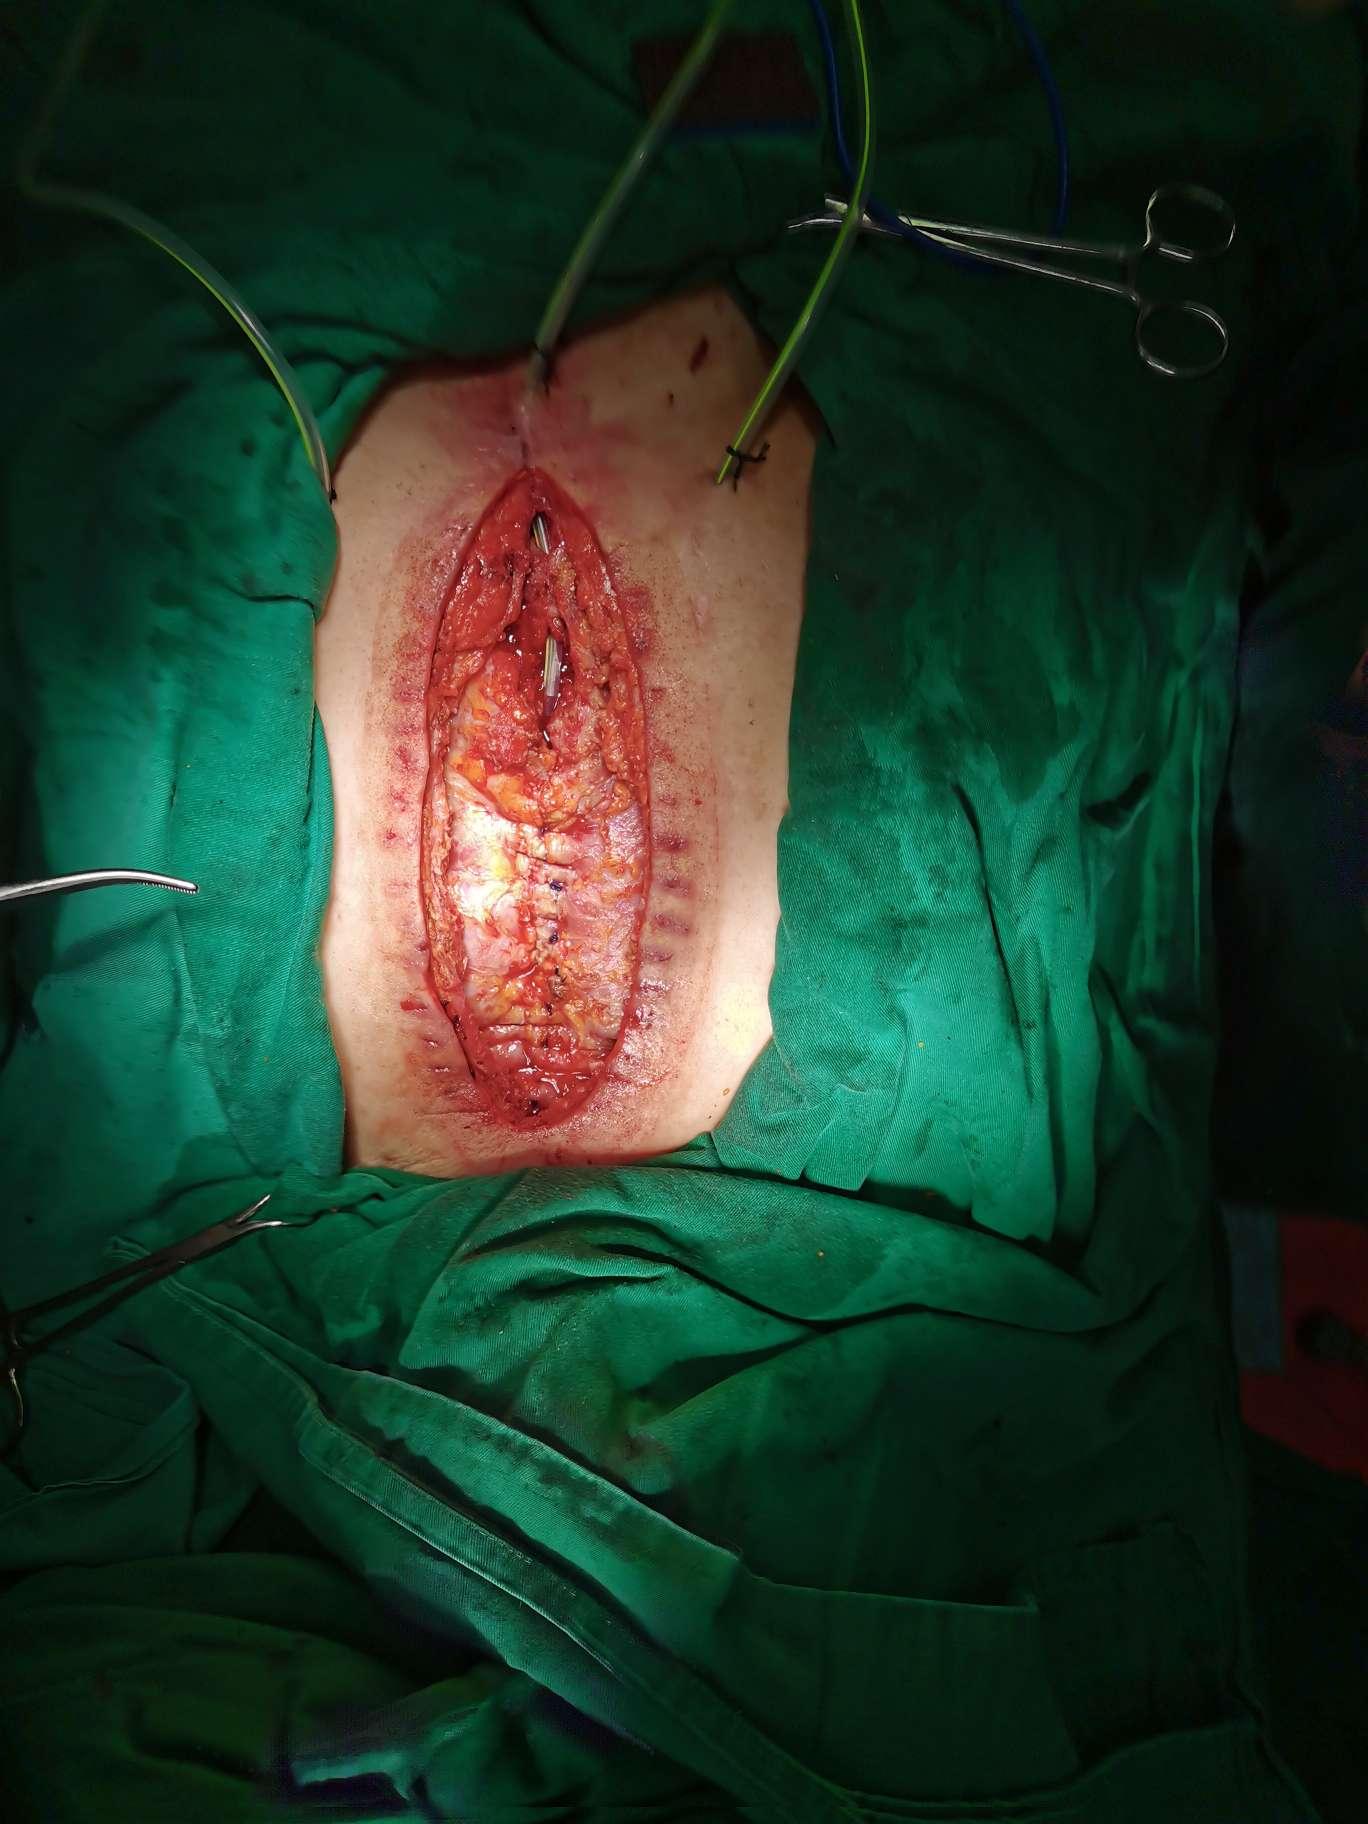 心脏术后重度伤口感染外科清创一期治愈手术